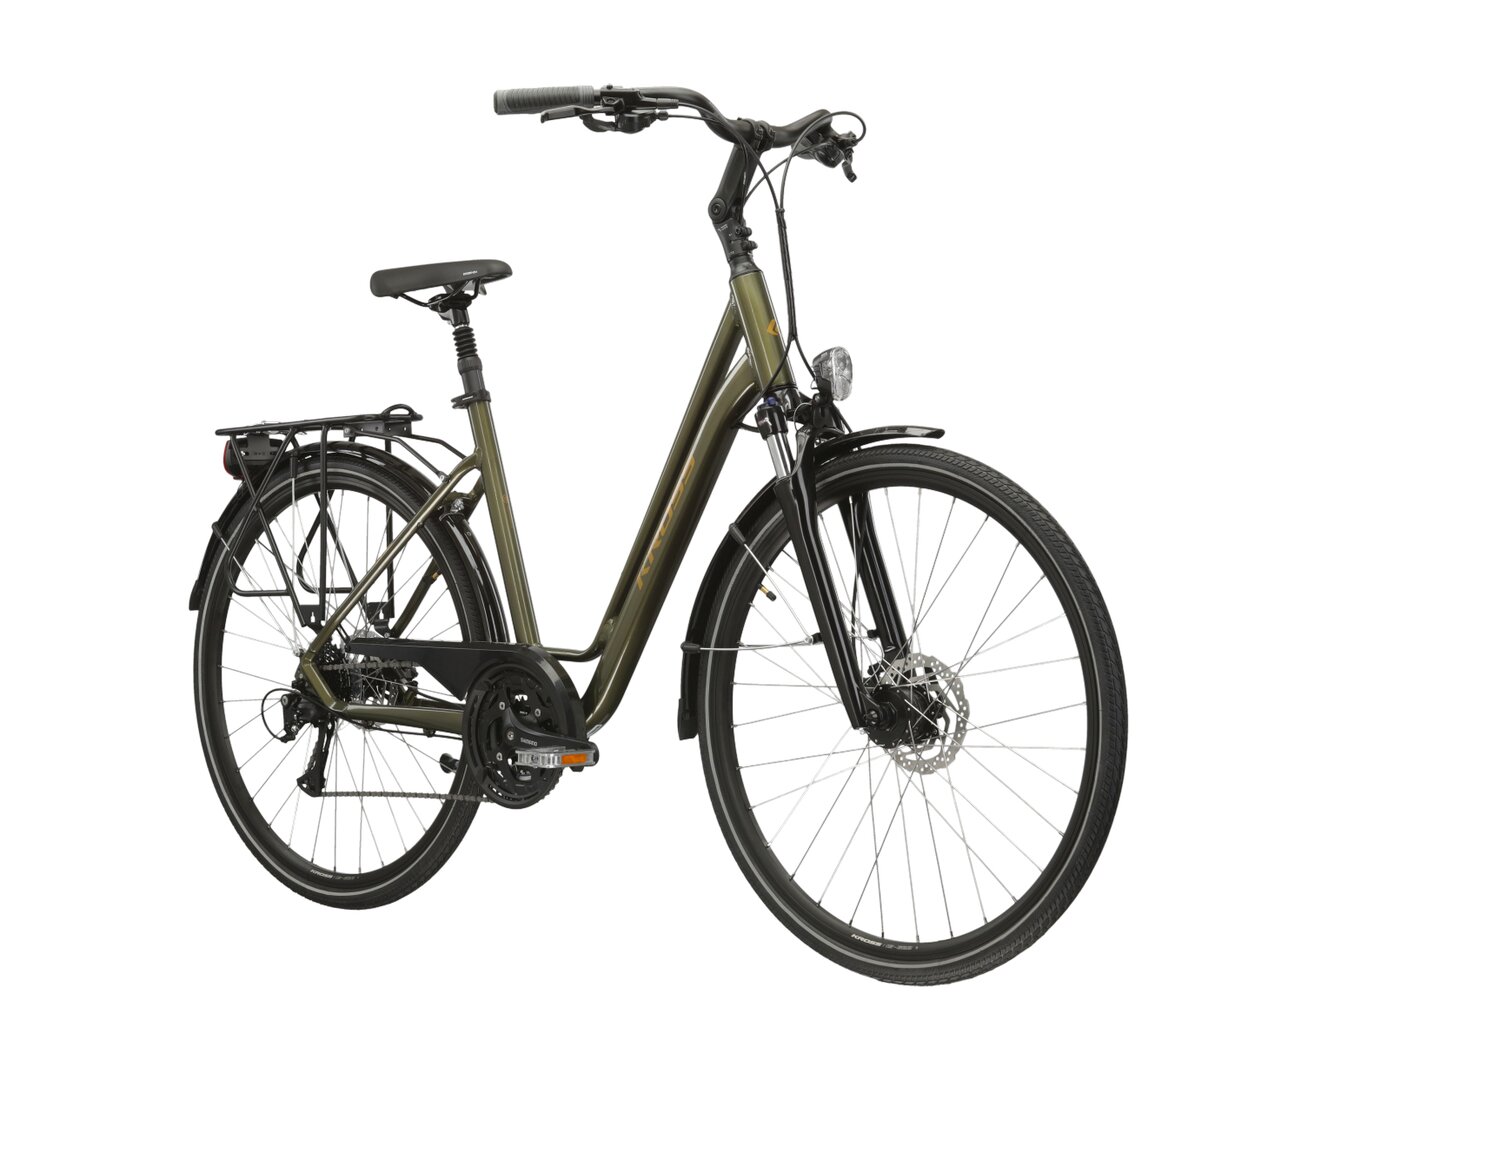  Rower miejski KROSS Sentio 4.0 na aluminiowej ramie w kolorze khaki wyposażony w osprzęt Shimano